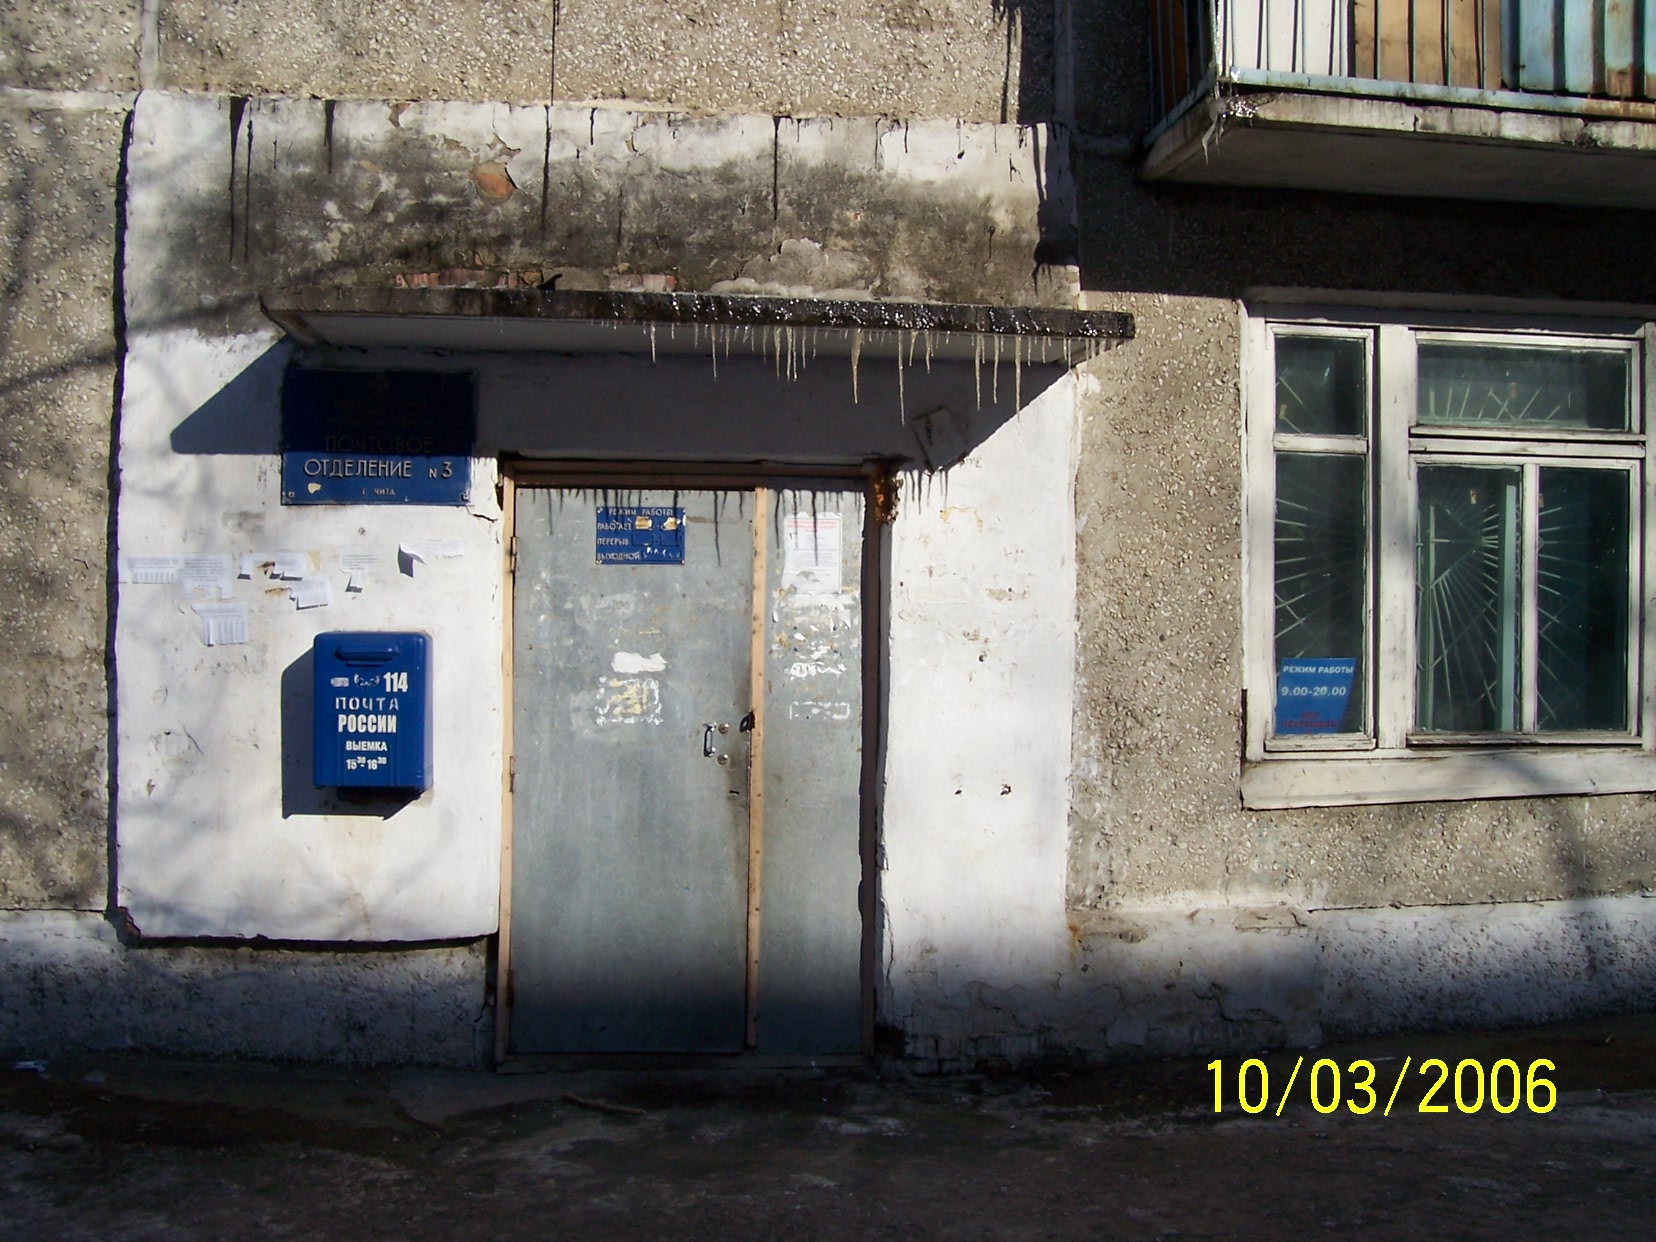 ВХОД, отделение почтовой связи 672003, Забайкальский край, Чита